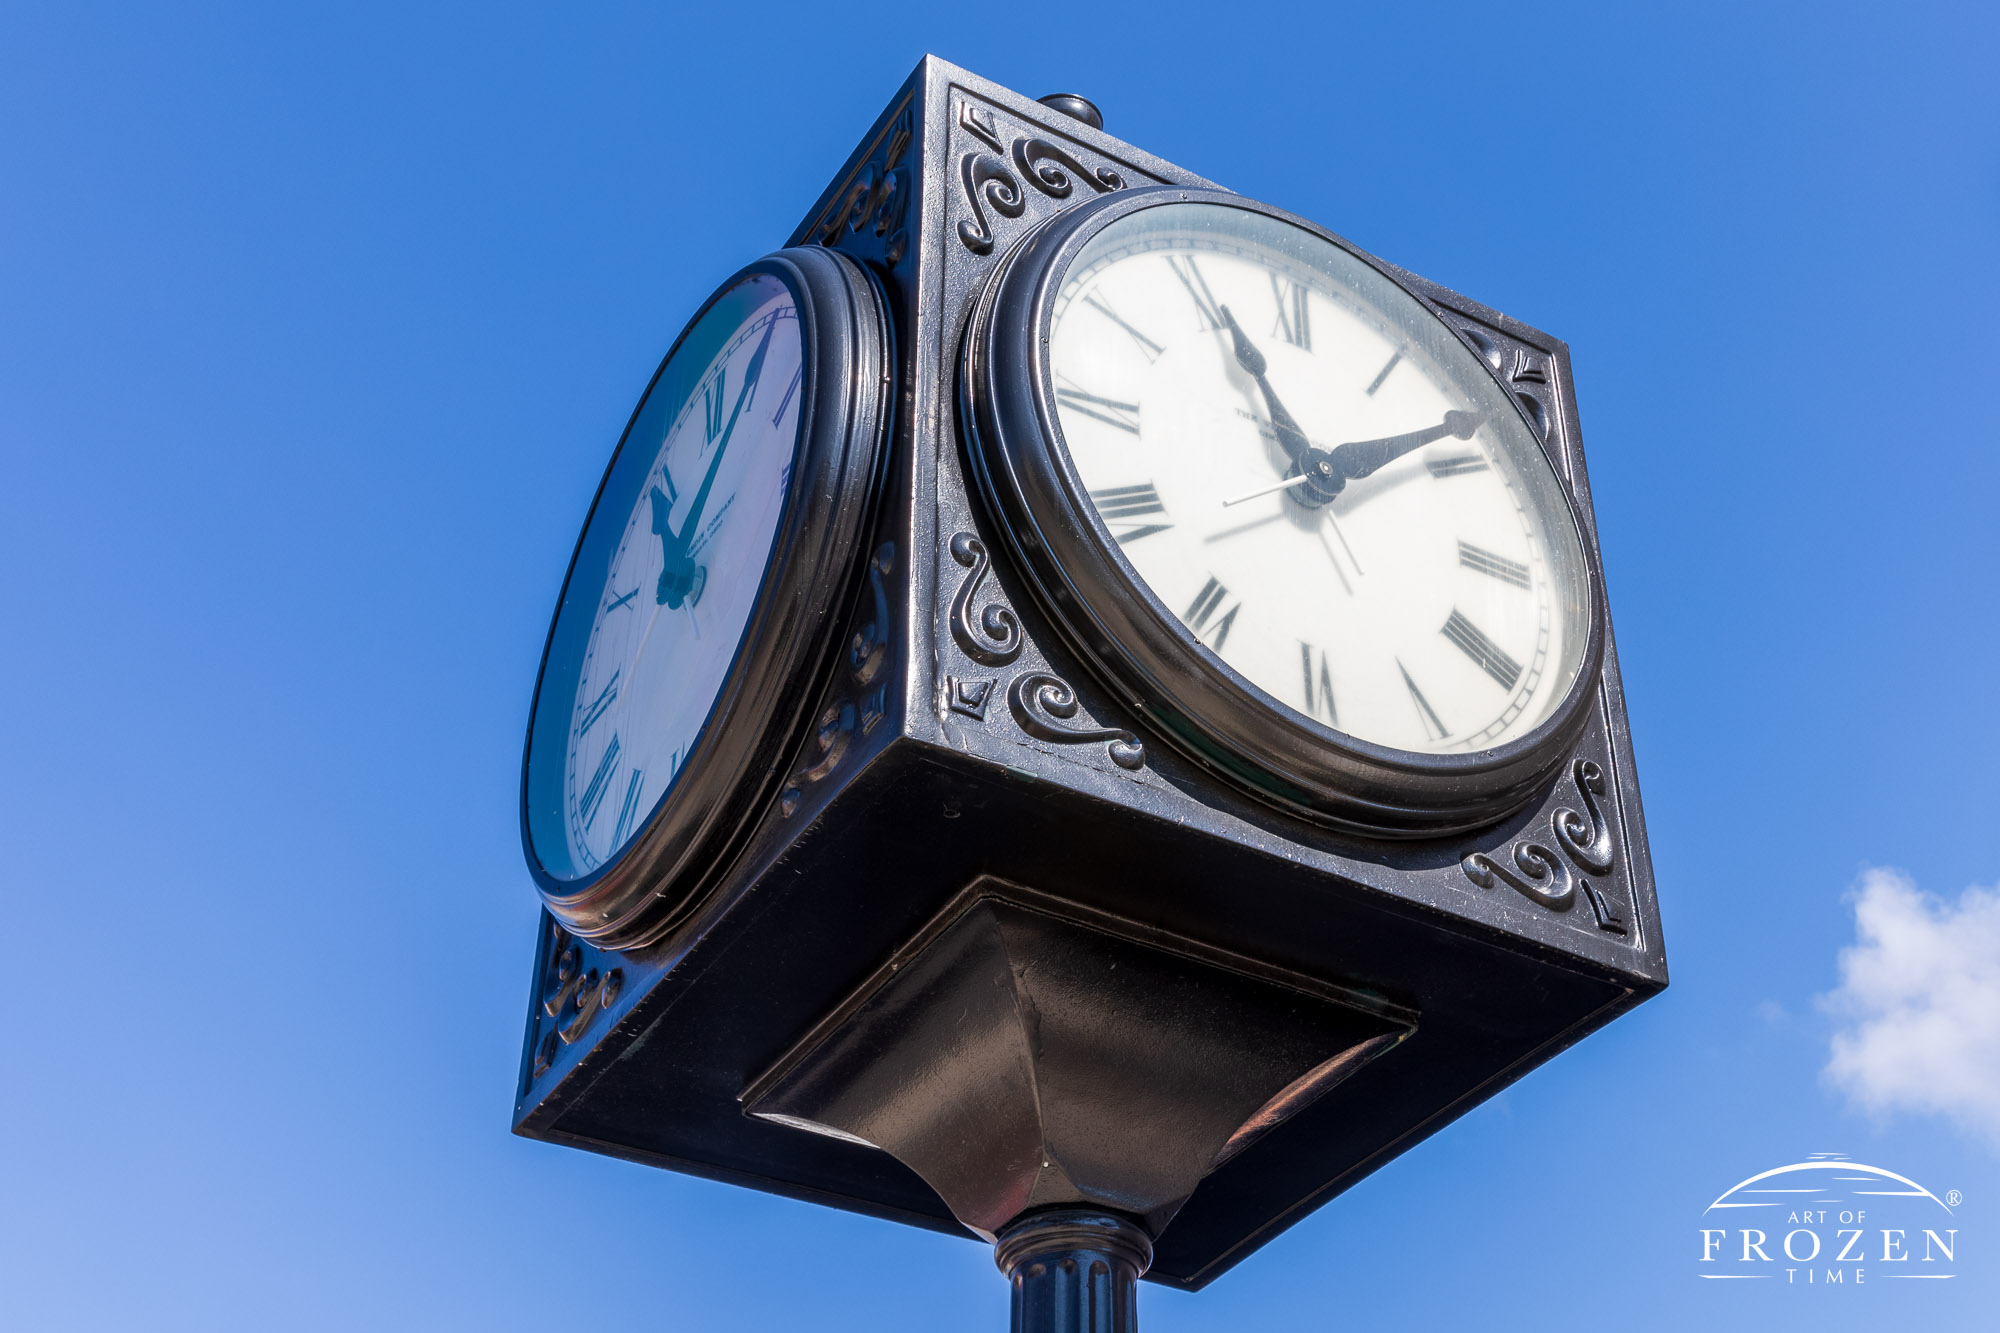 A close view of the four-side clock residing in McColloch Square, Piqua Ohio